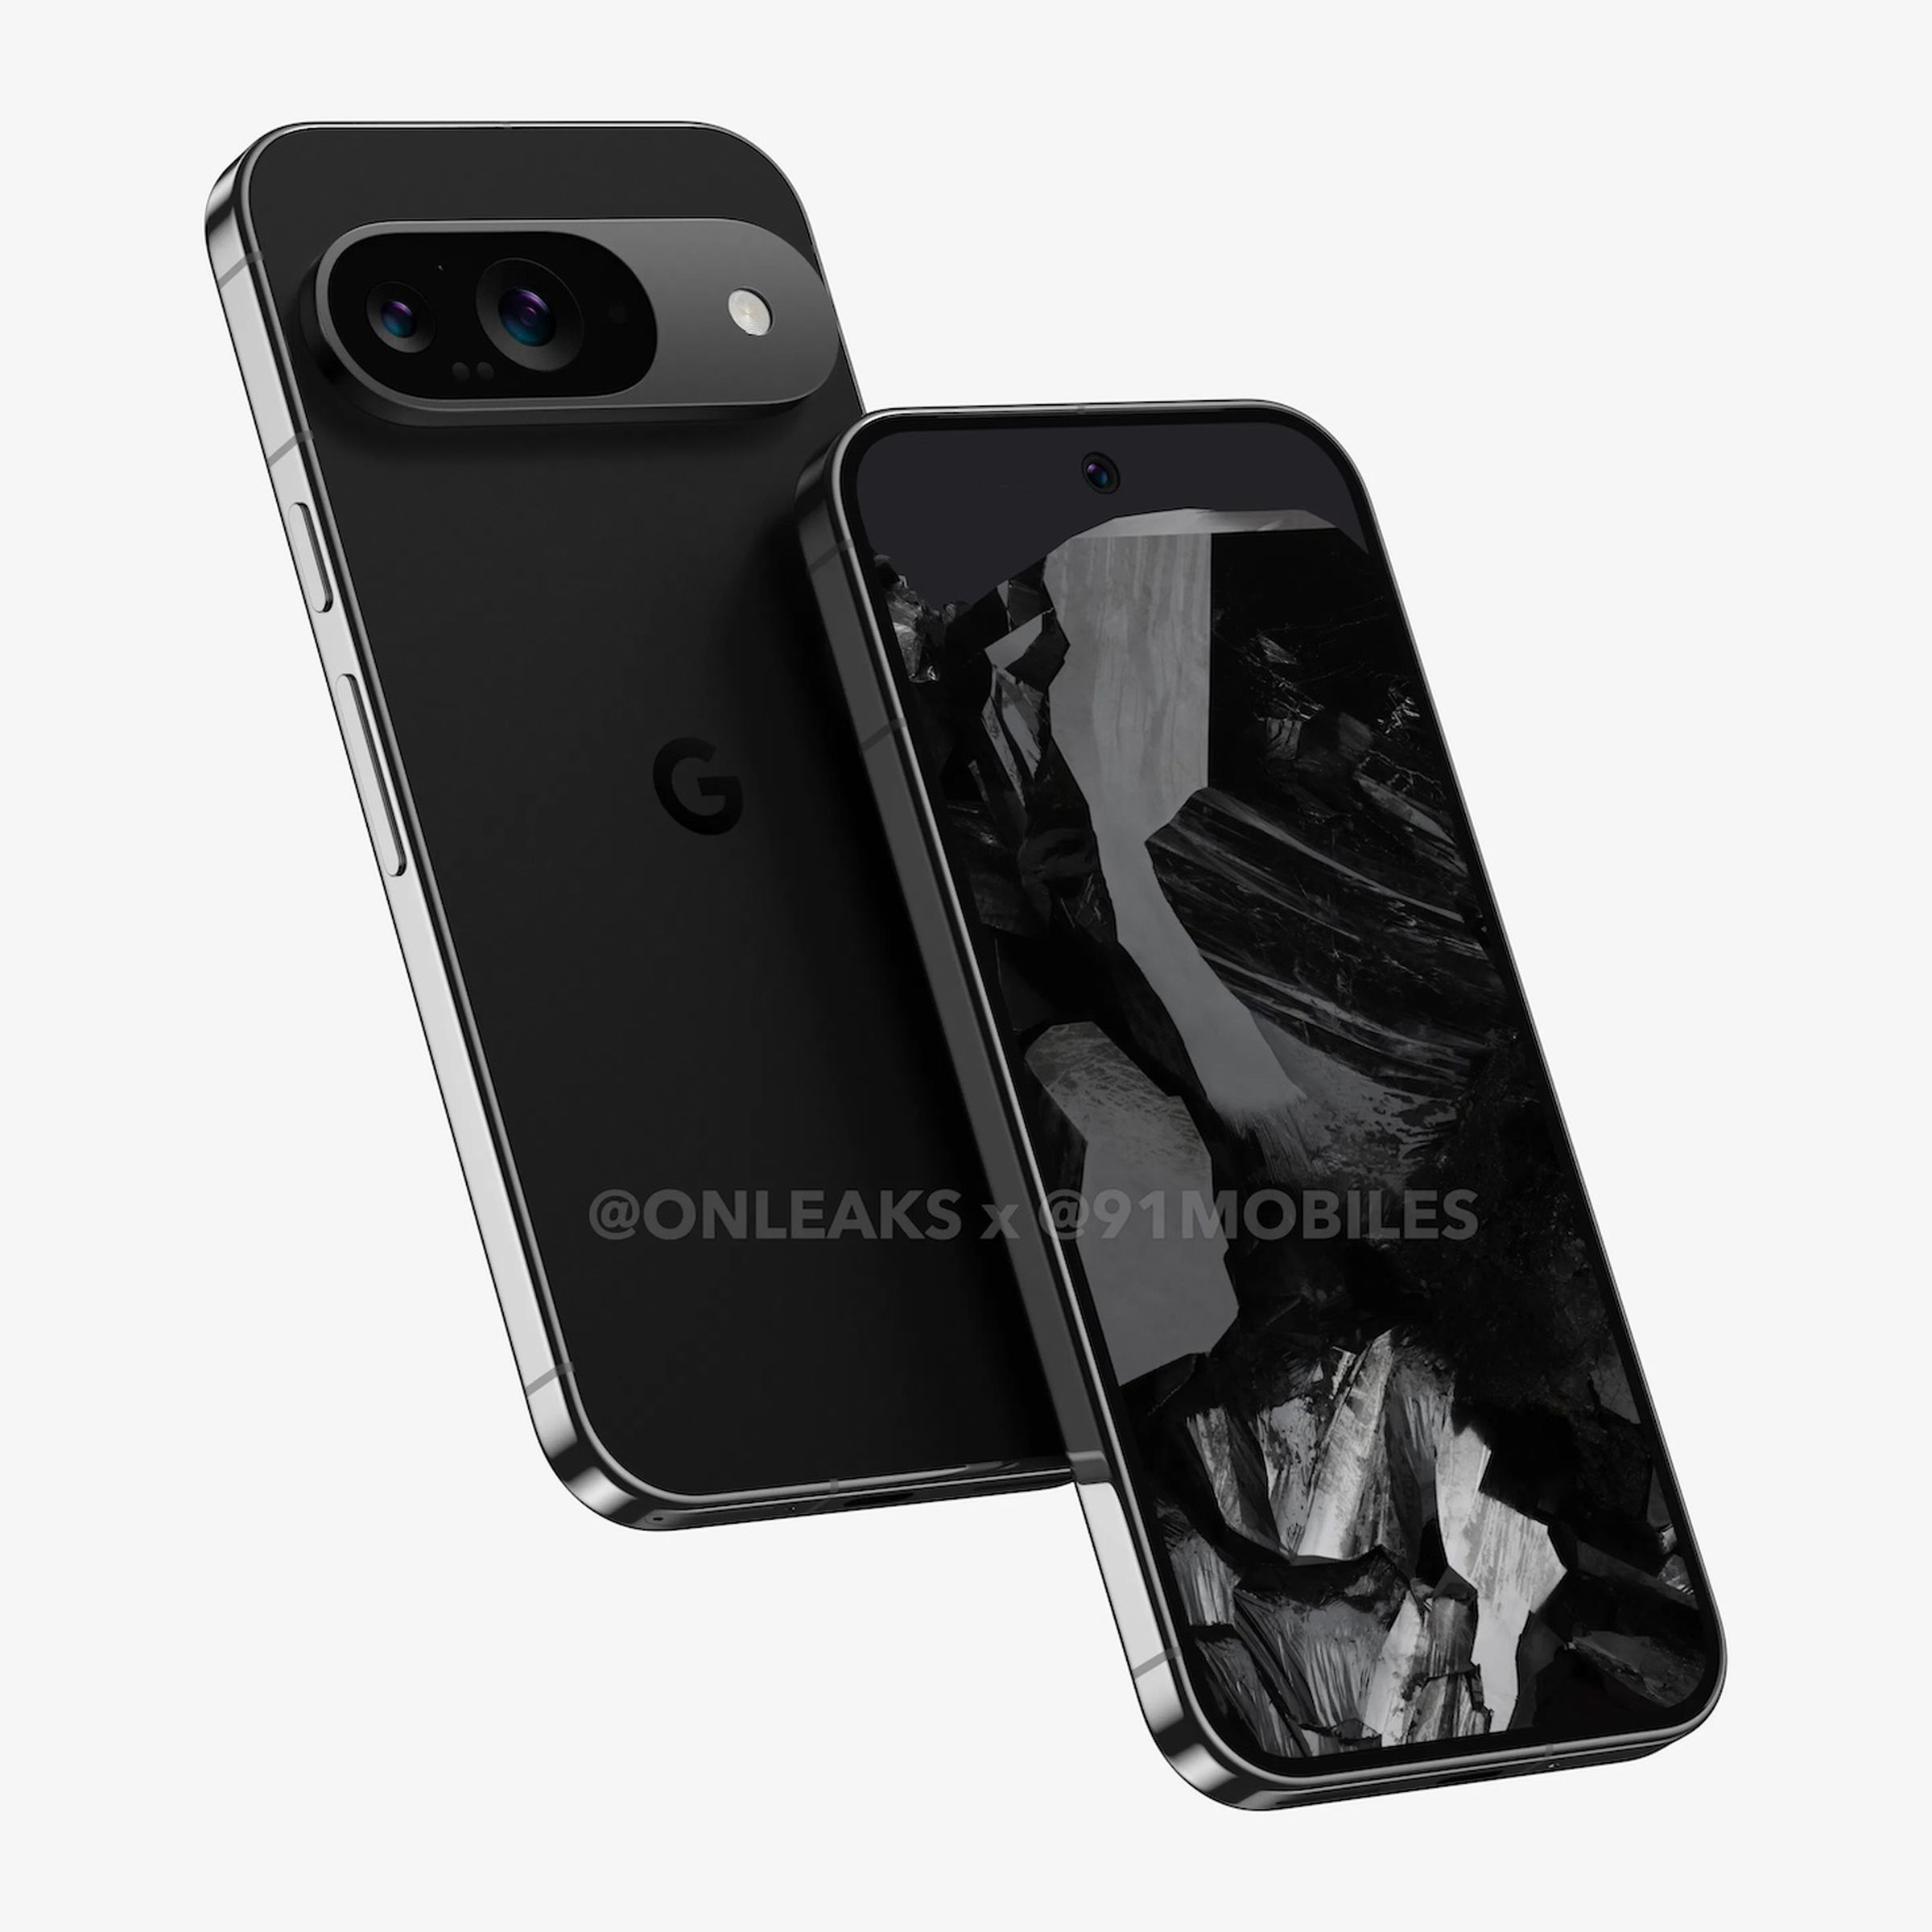 A render of Google’s Pixel 9 smartphone.